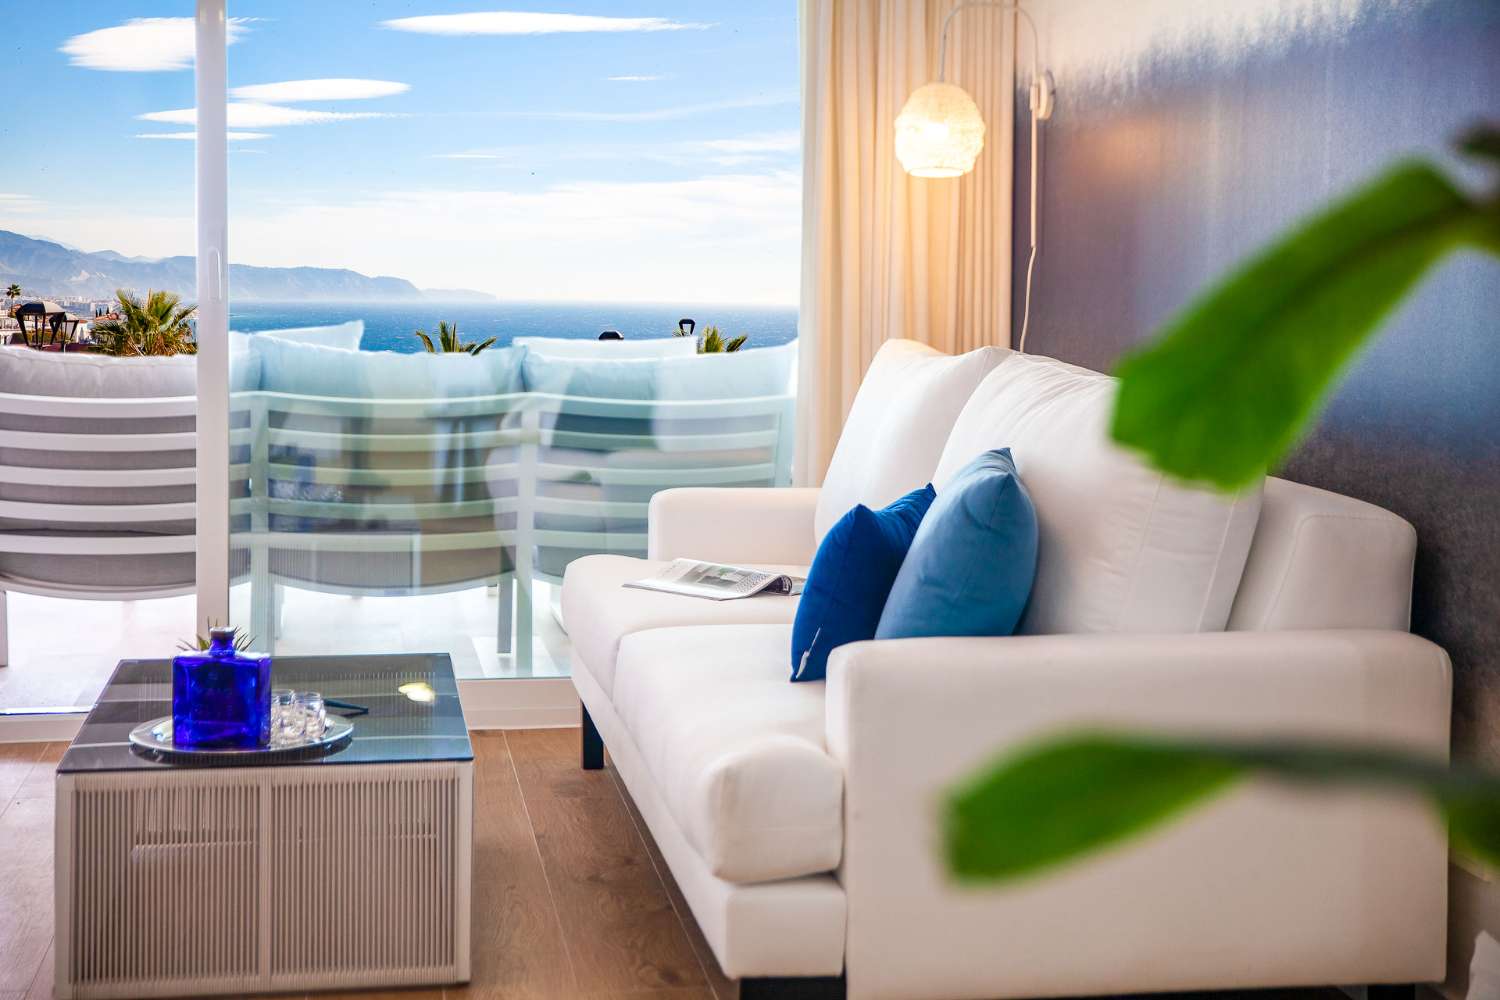 Ático disponible en complejo residencial con increíbles vistas al mar